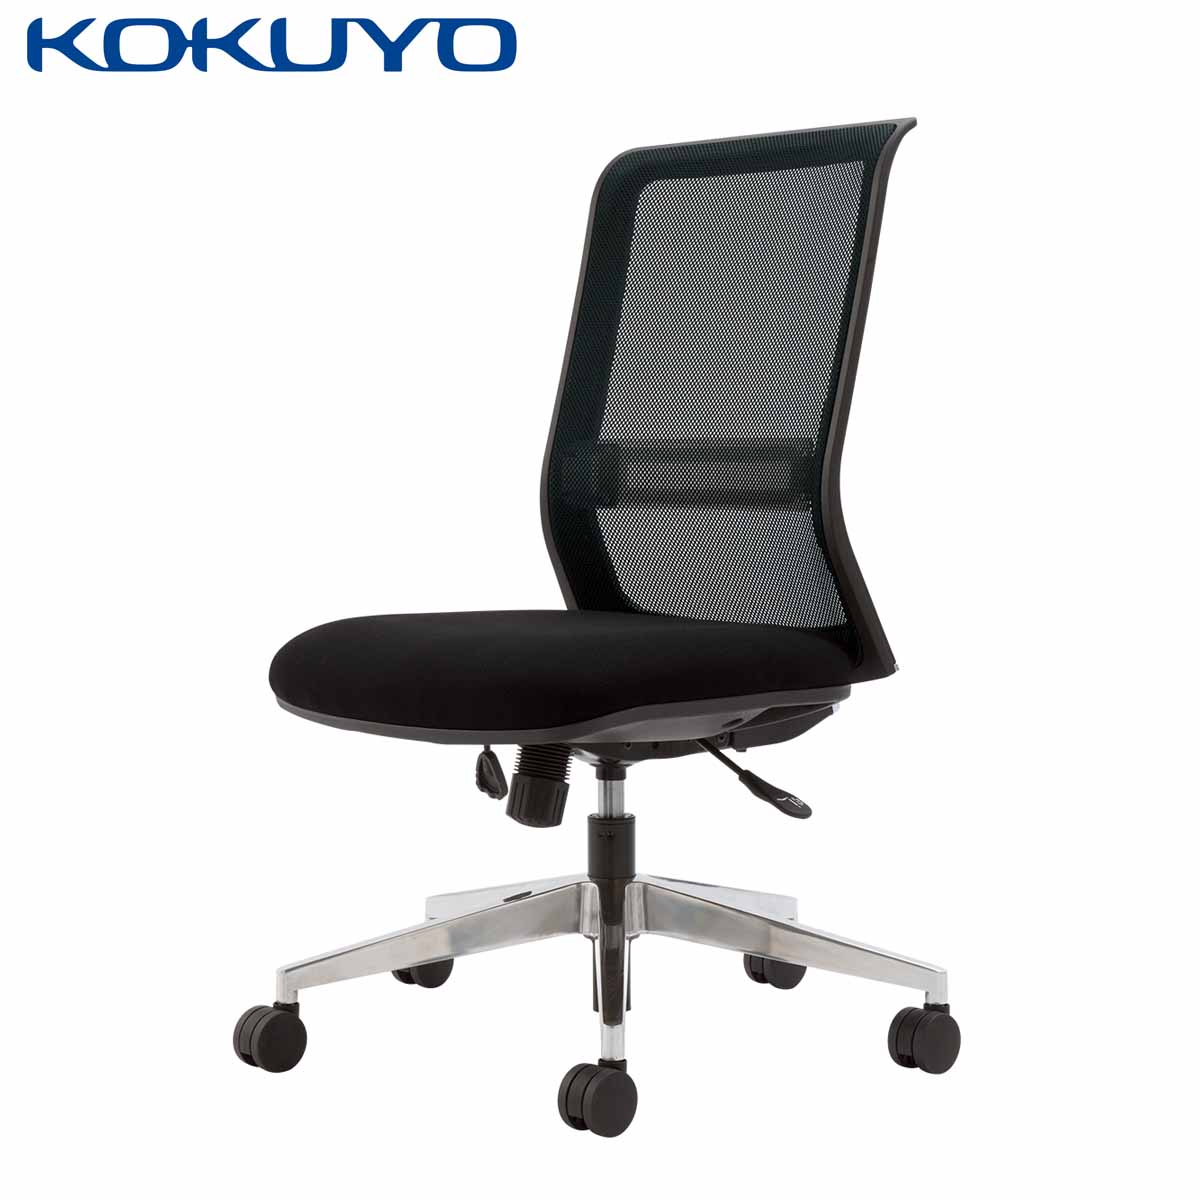 【ラクラク納品】空間を選ばない。リーズナブルなハイクオリティオフィスチェア コクヨ デスクチェア オフィスチェア 椅子 ENTRY エントリー CR-AL9000BK メッシュタイプ ブラックシェル アルミ脚